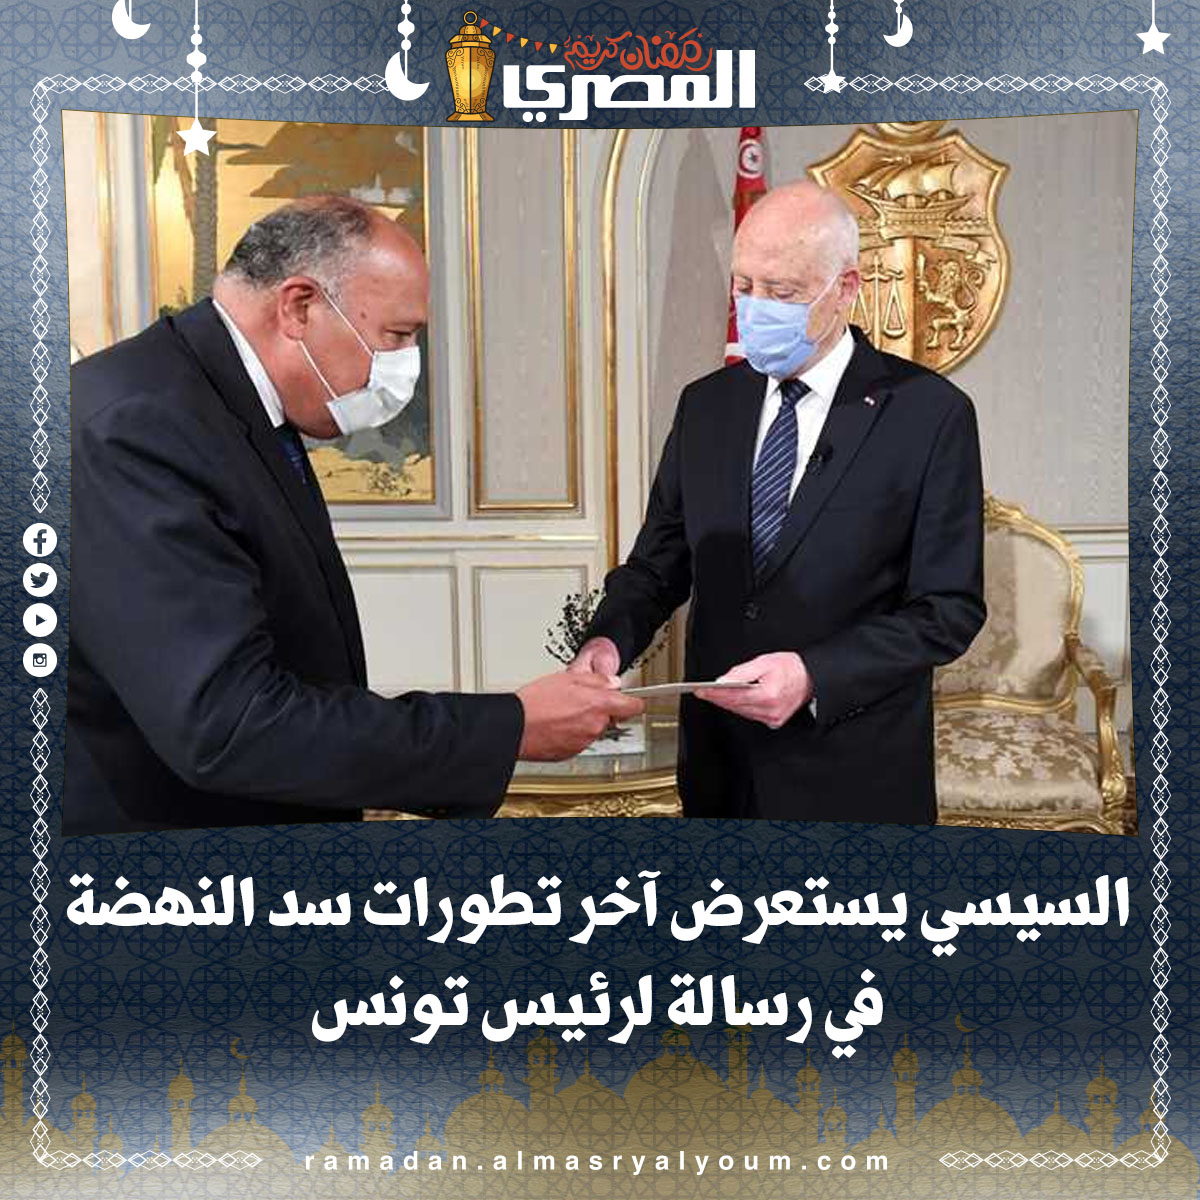 السيسي يستعرض آخر تطورات سد النهضة في رسالة لرئيس تونس (تفاصيل)